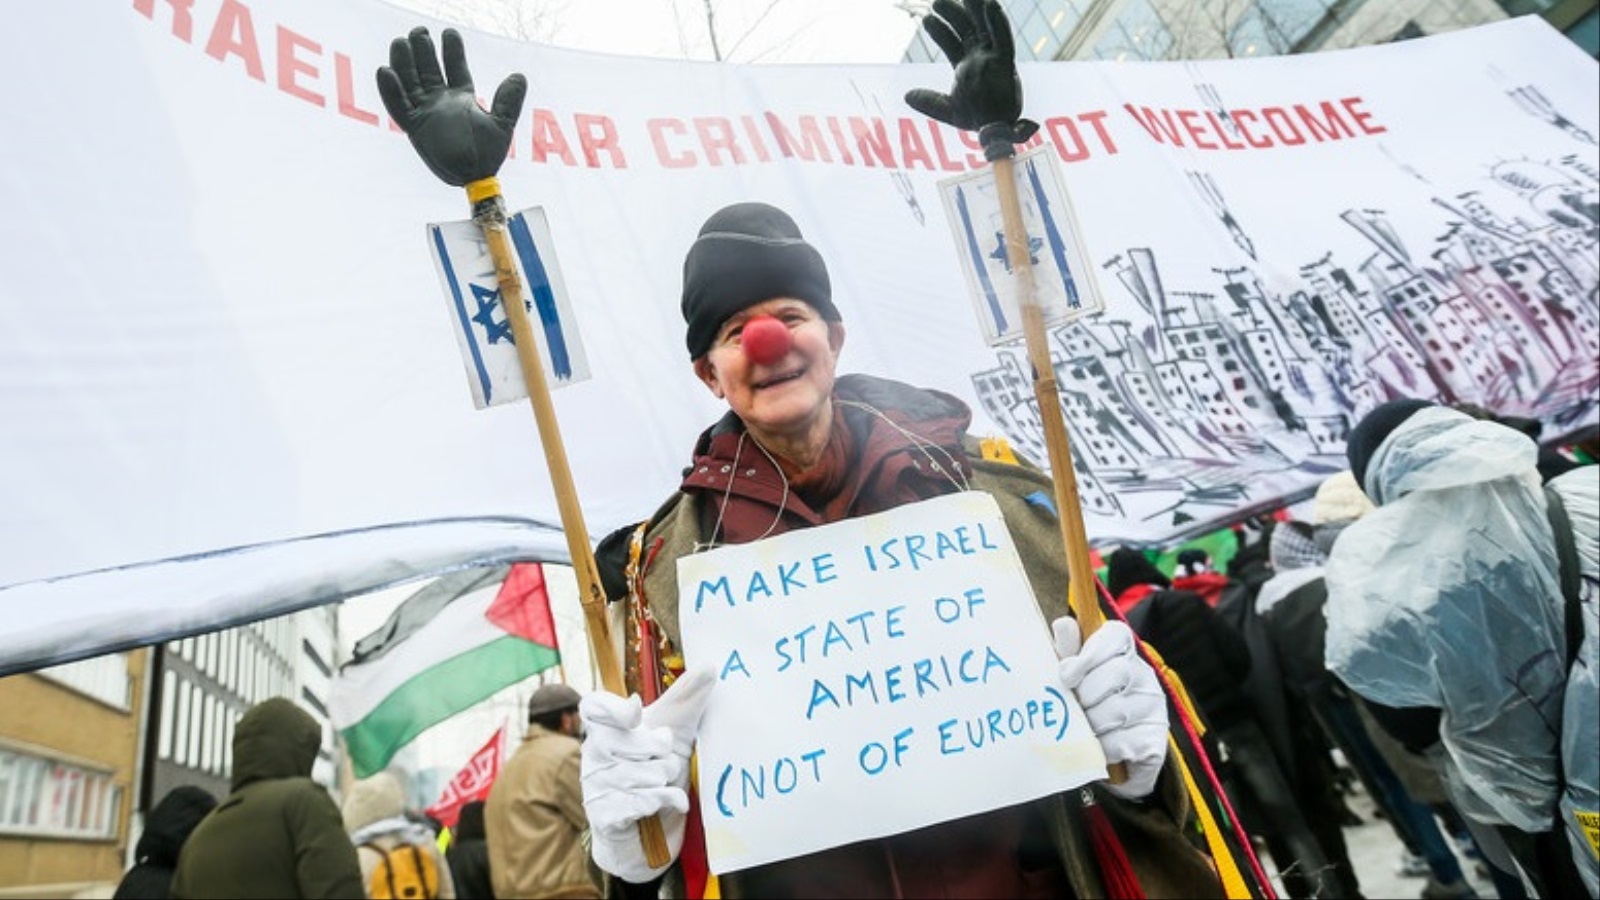 أحد المحتجين على زيارة نتنياهو لبروكسل يرفع لافتة تدعو لإلحاق إسرائيل بأميركا بدلا من إلحاقها بأوروبا (الأوروبية)